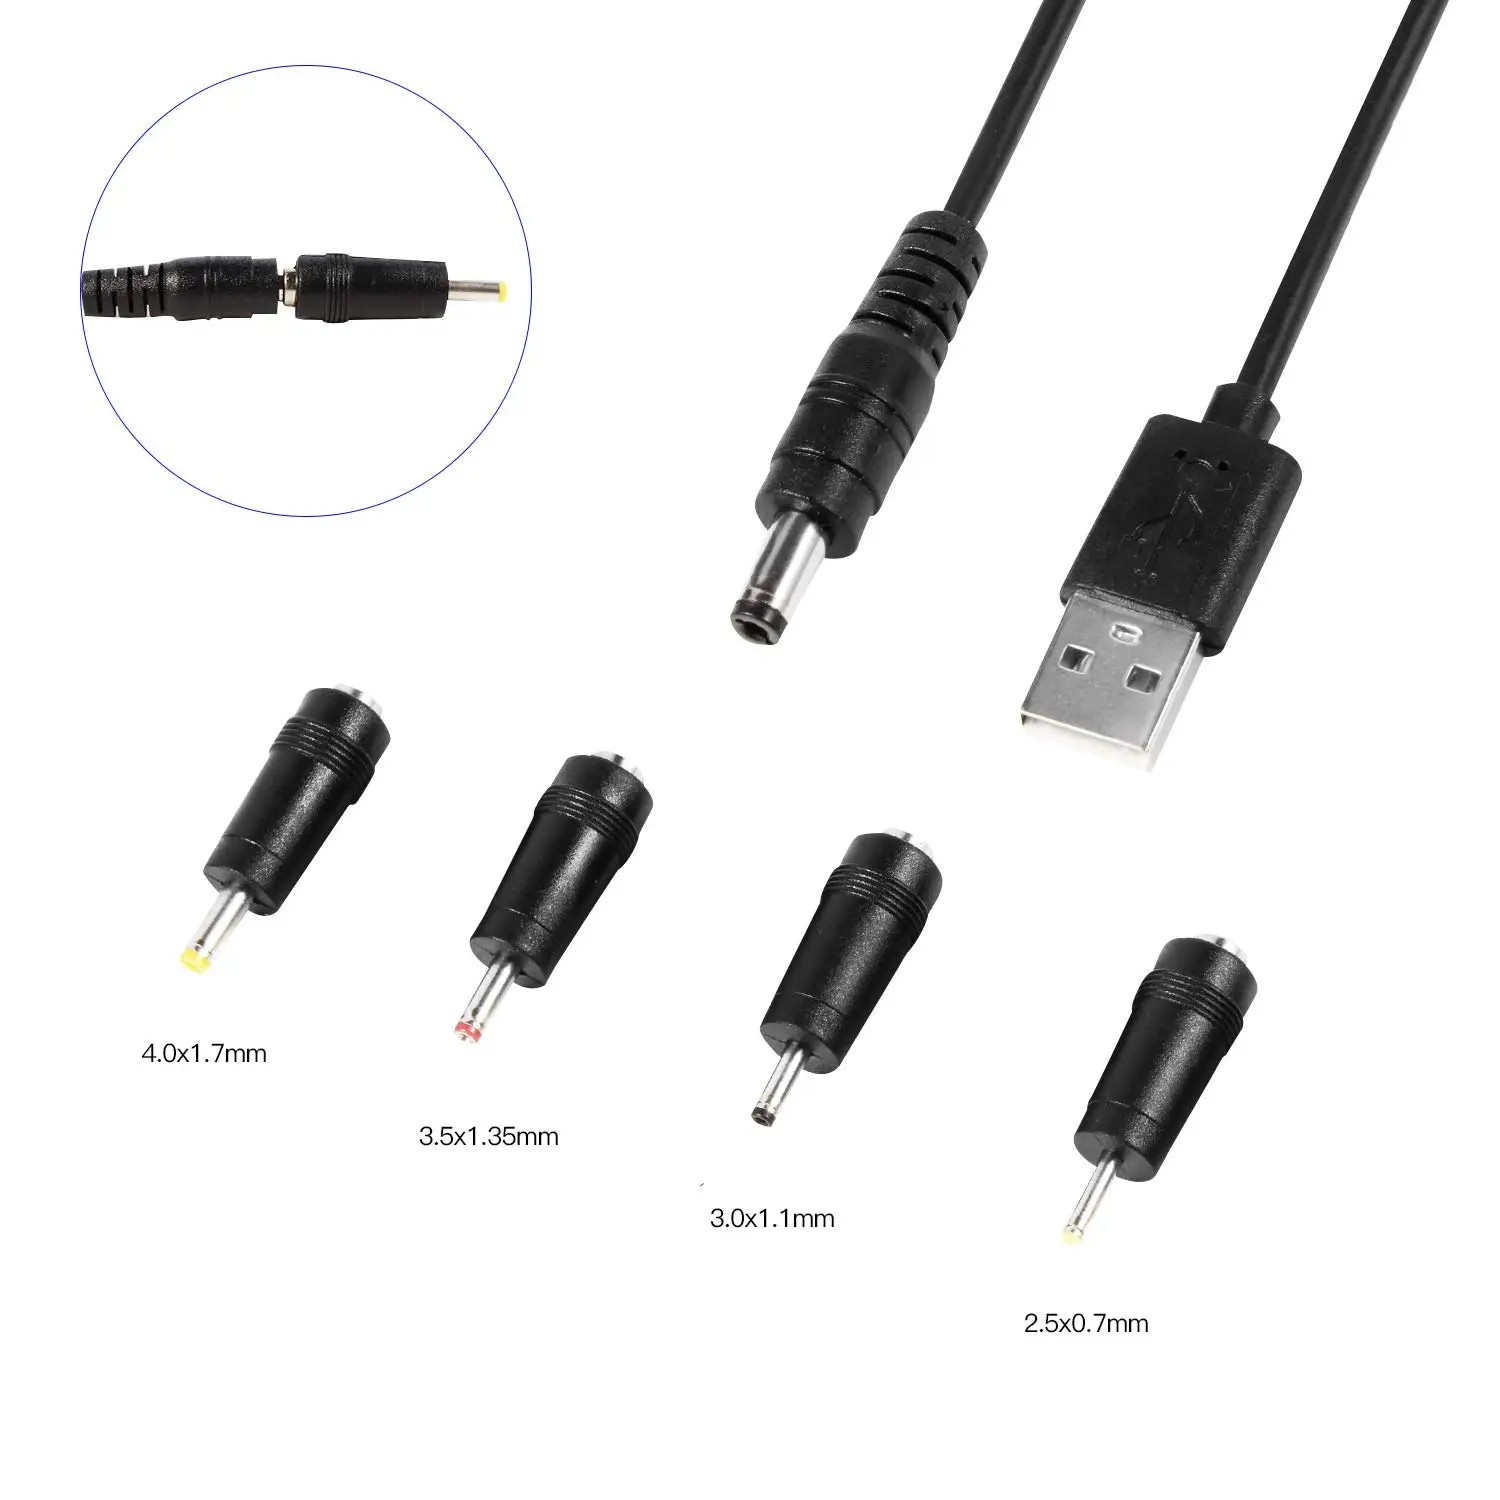 Кабель 5 вольт. Штекер зарядки: DC 5,5*2,5 mm. Кабель питания USB / DC Jack 2,0 mm. Кабель питания USB DC 5.5 Х 2.5 мм. USB -DC 2mm кабель.